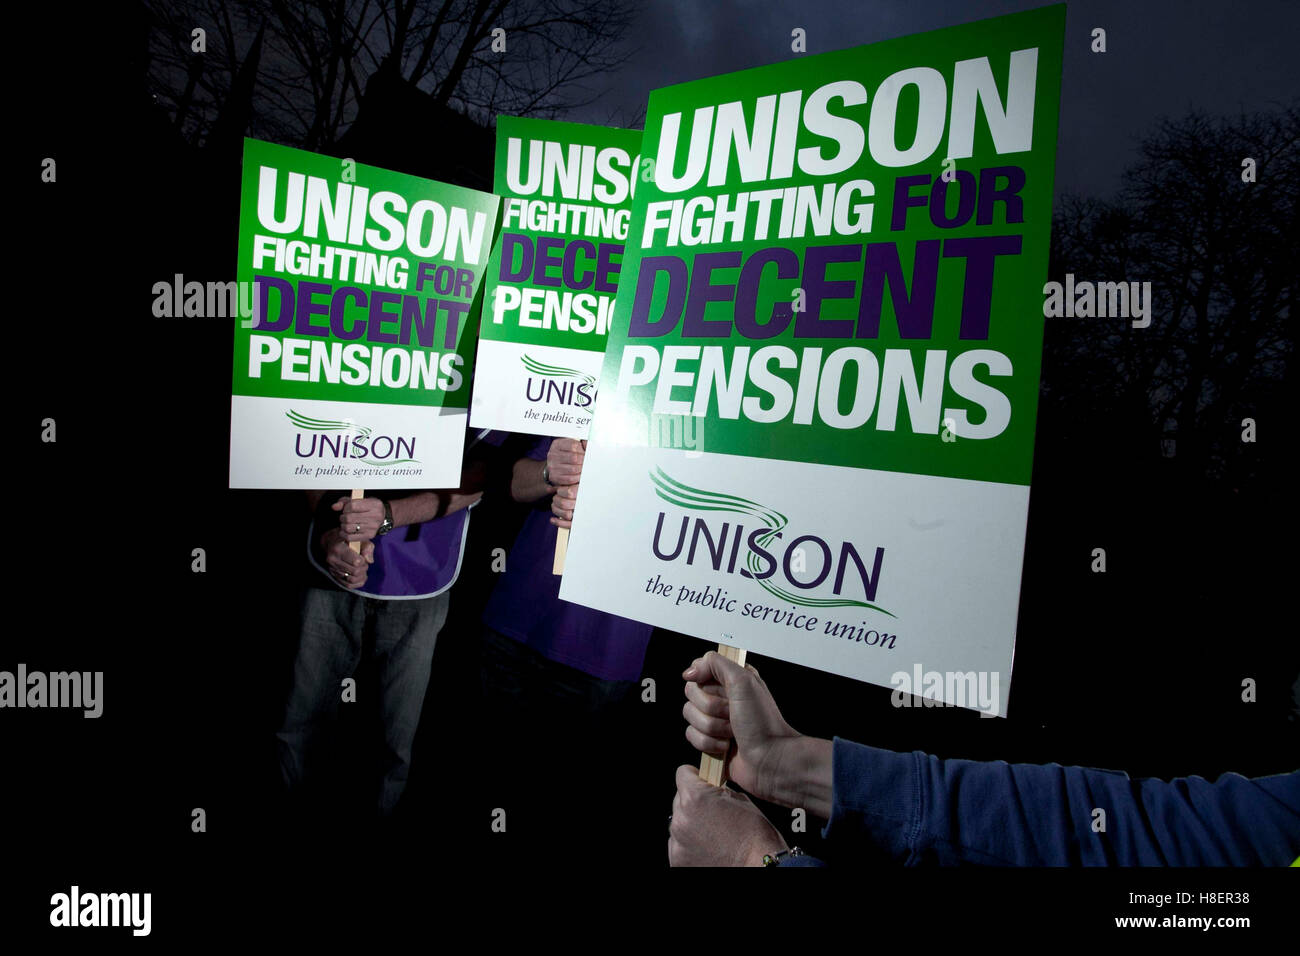 Unisons pancartas - luchando por pensiones dignas Foto de stock